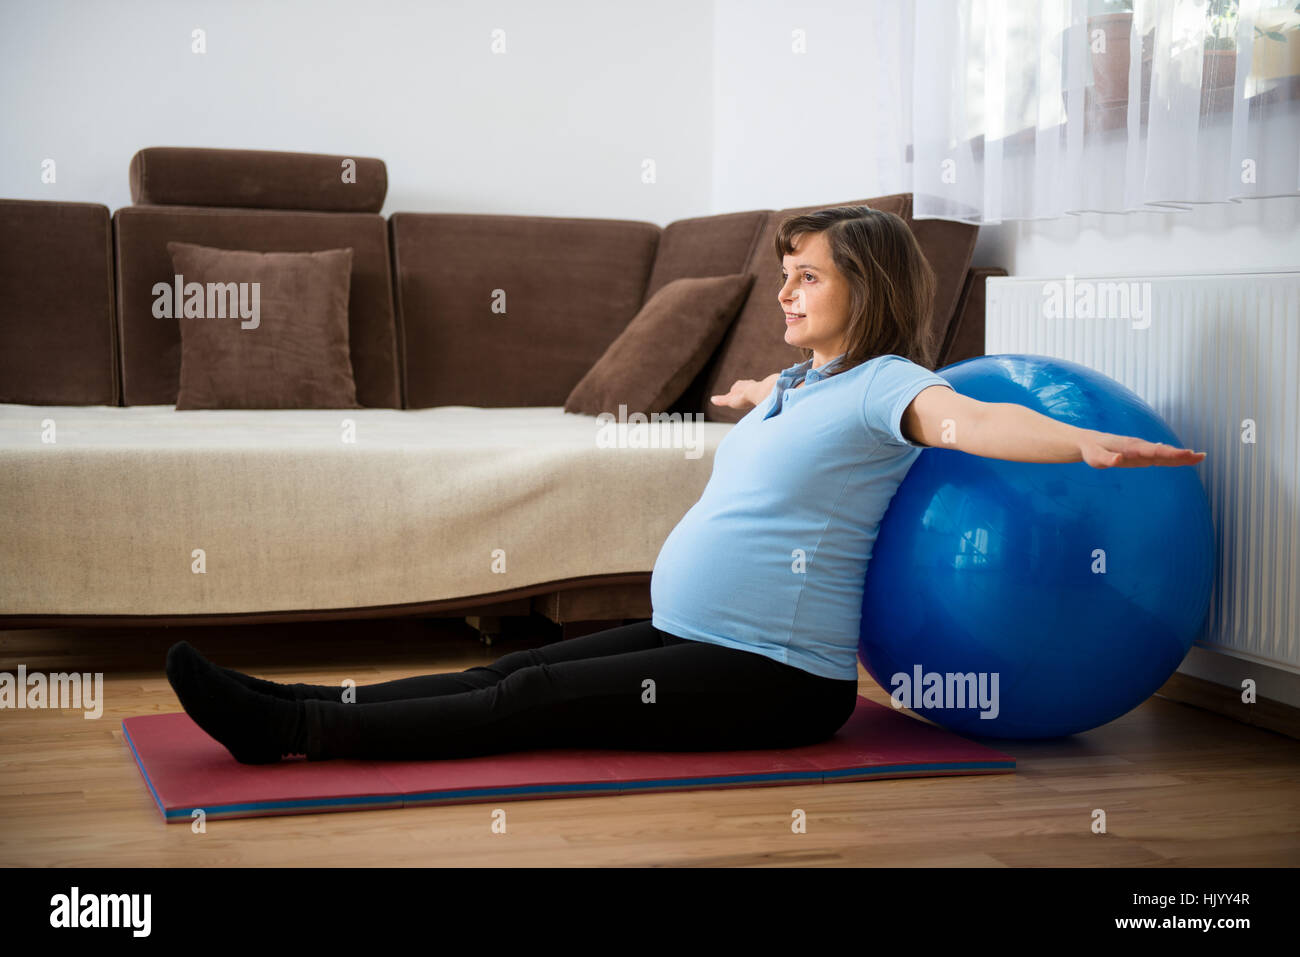 упражнения при беременности для груди фото 102